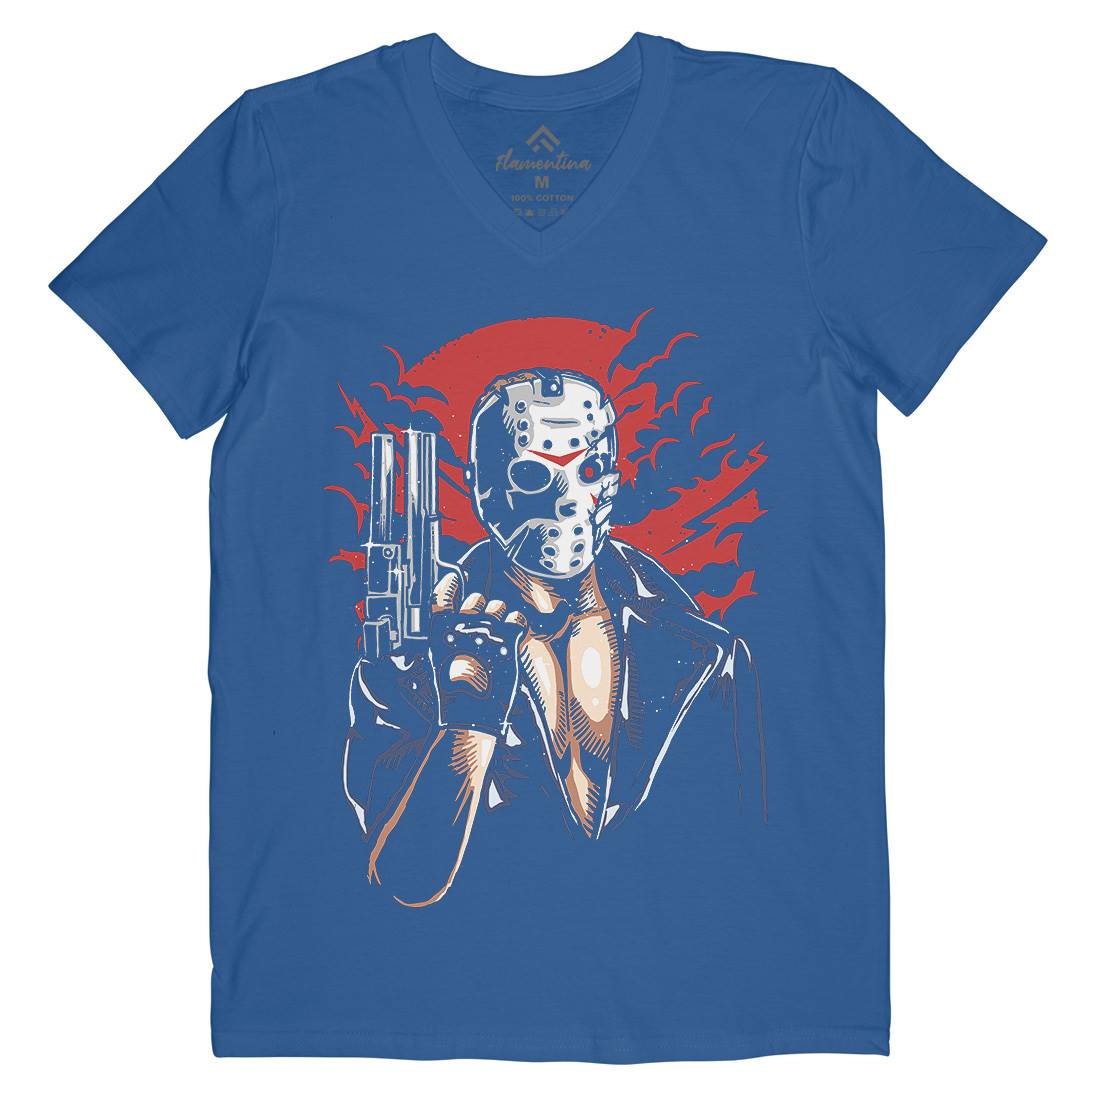 Jason Mens V-Neck T-Shirt Horror A548